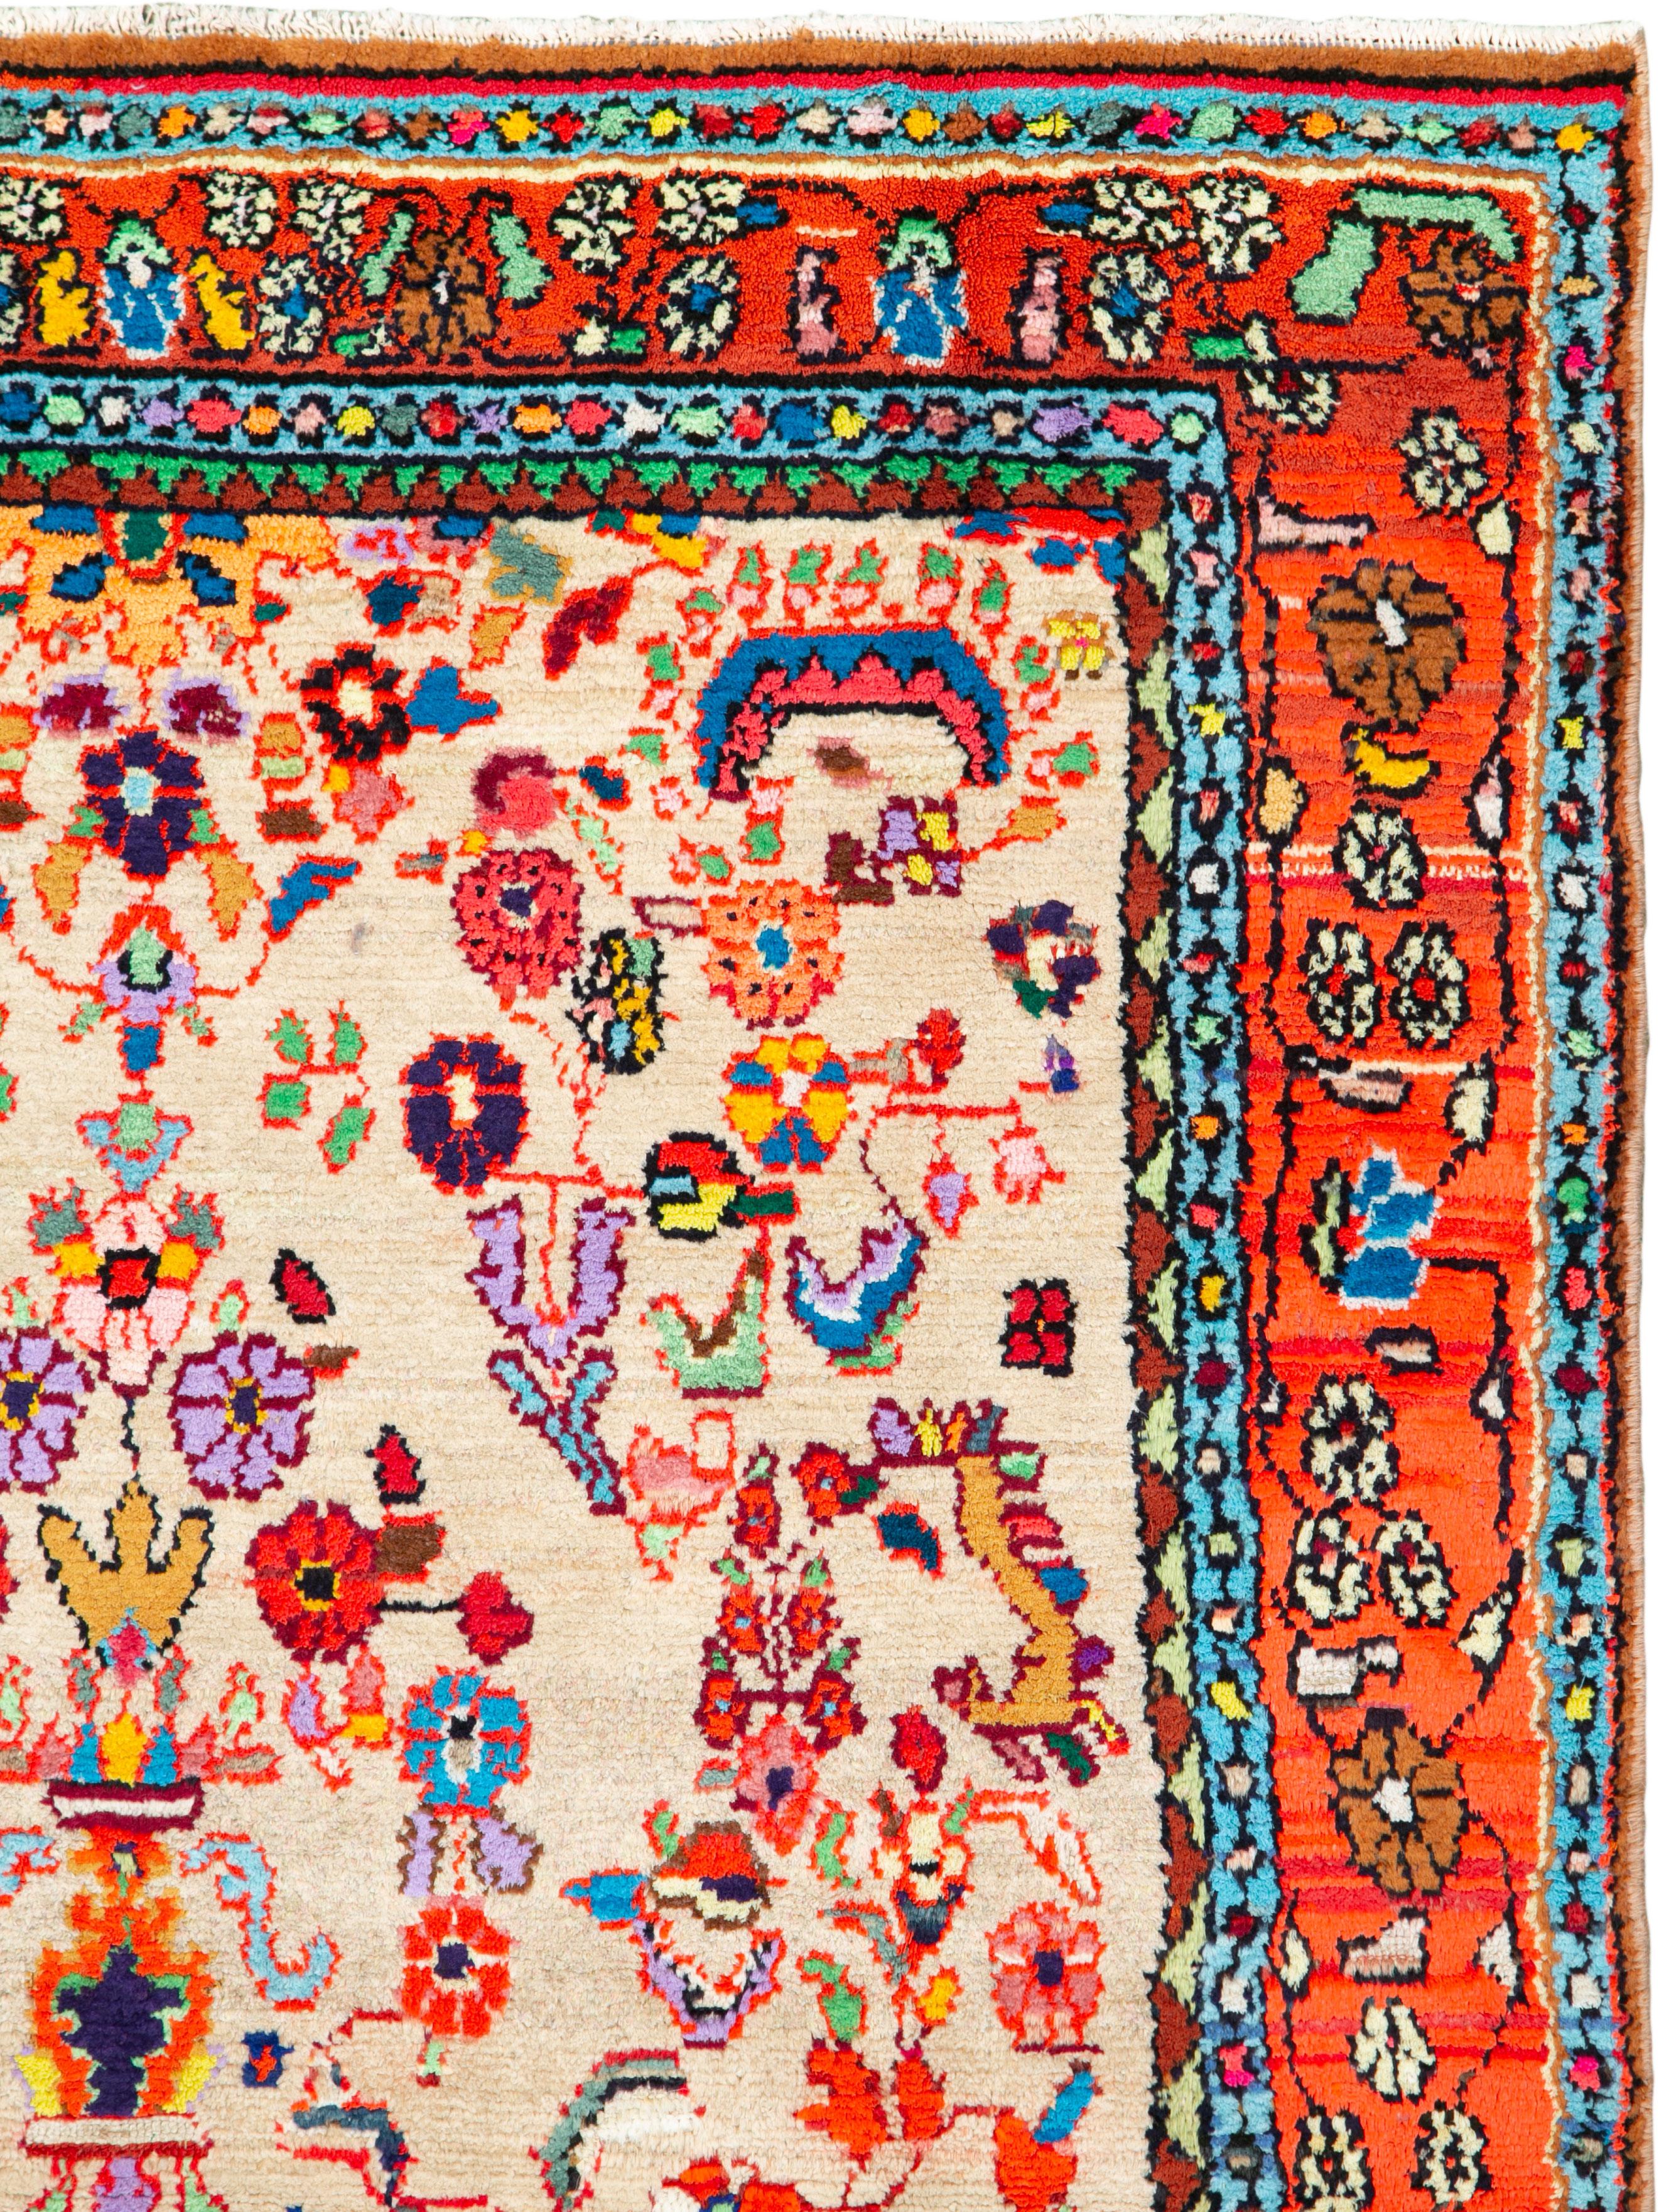 Un tapis persan vintage Hamadan du milieu du 20e siècle. Une interprétation très folklorique du motif traditionnel persan Sarouk dans une palette de couleurs plus contemporaine.

Mesures : 4' 4